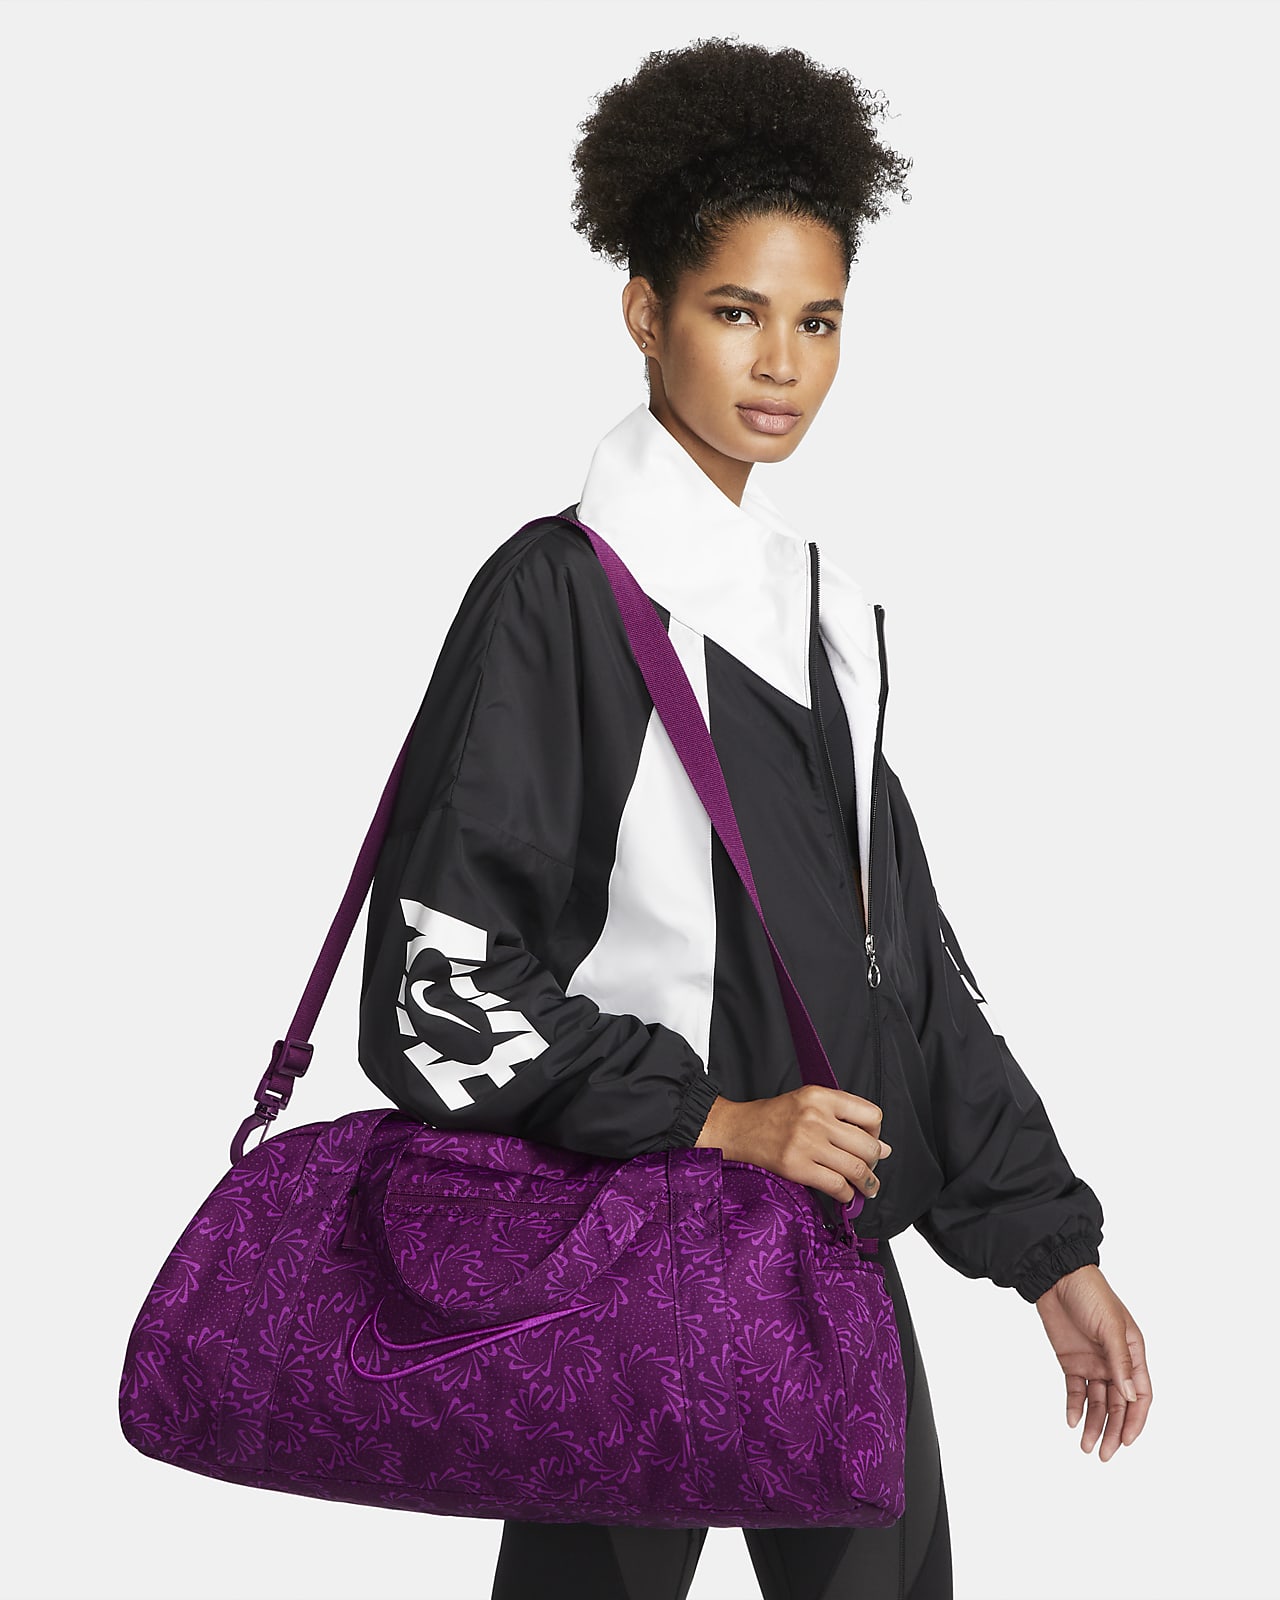 Nike Active Bag Purple Lightweight Lined Pockets Adjustable